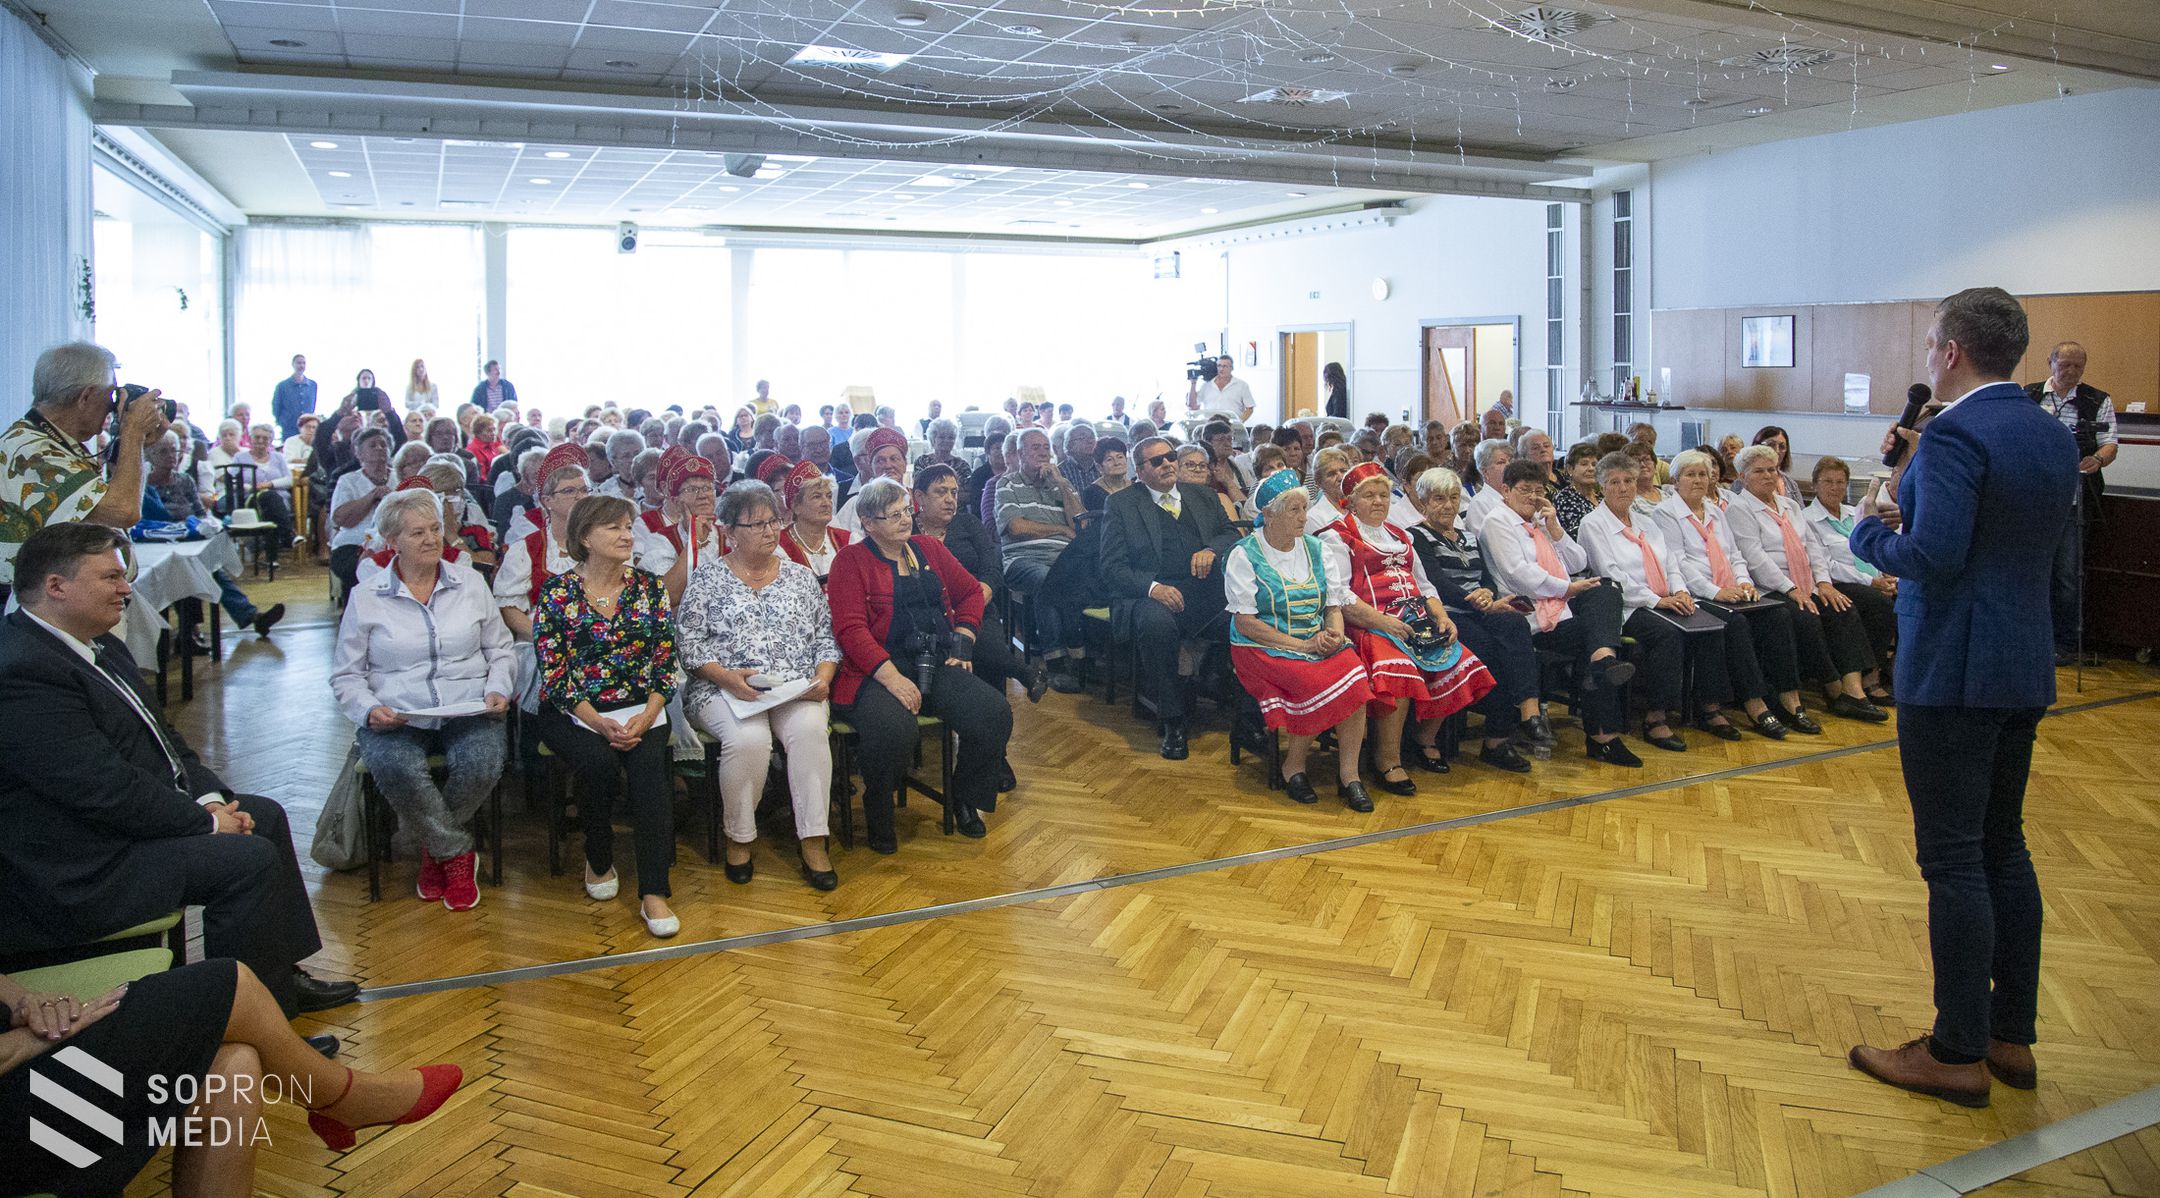 Nyugdíjas kulturális találkozó Sopronban 